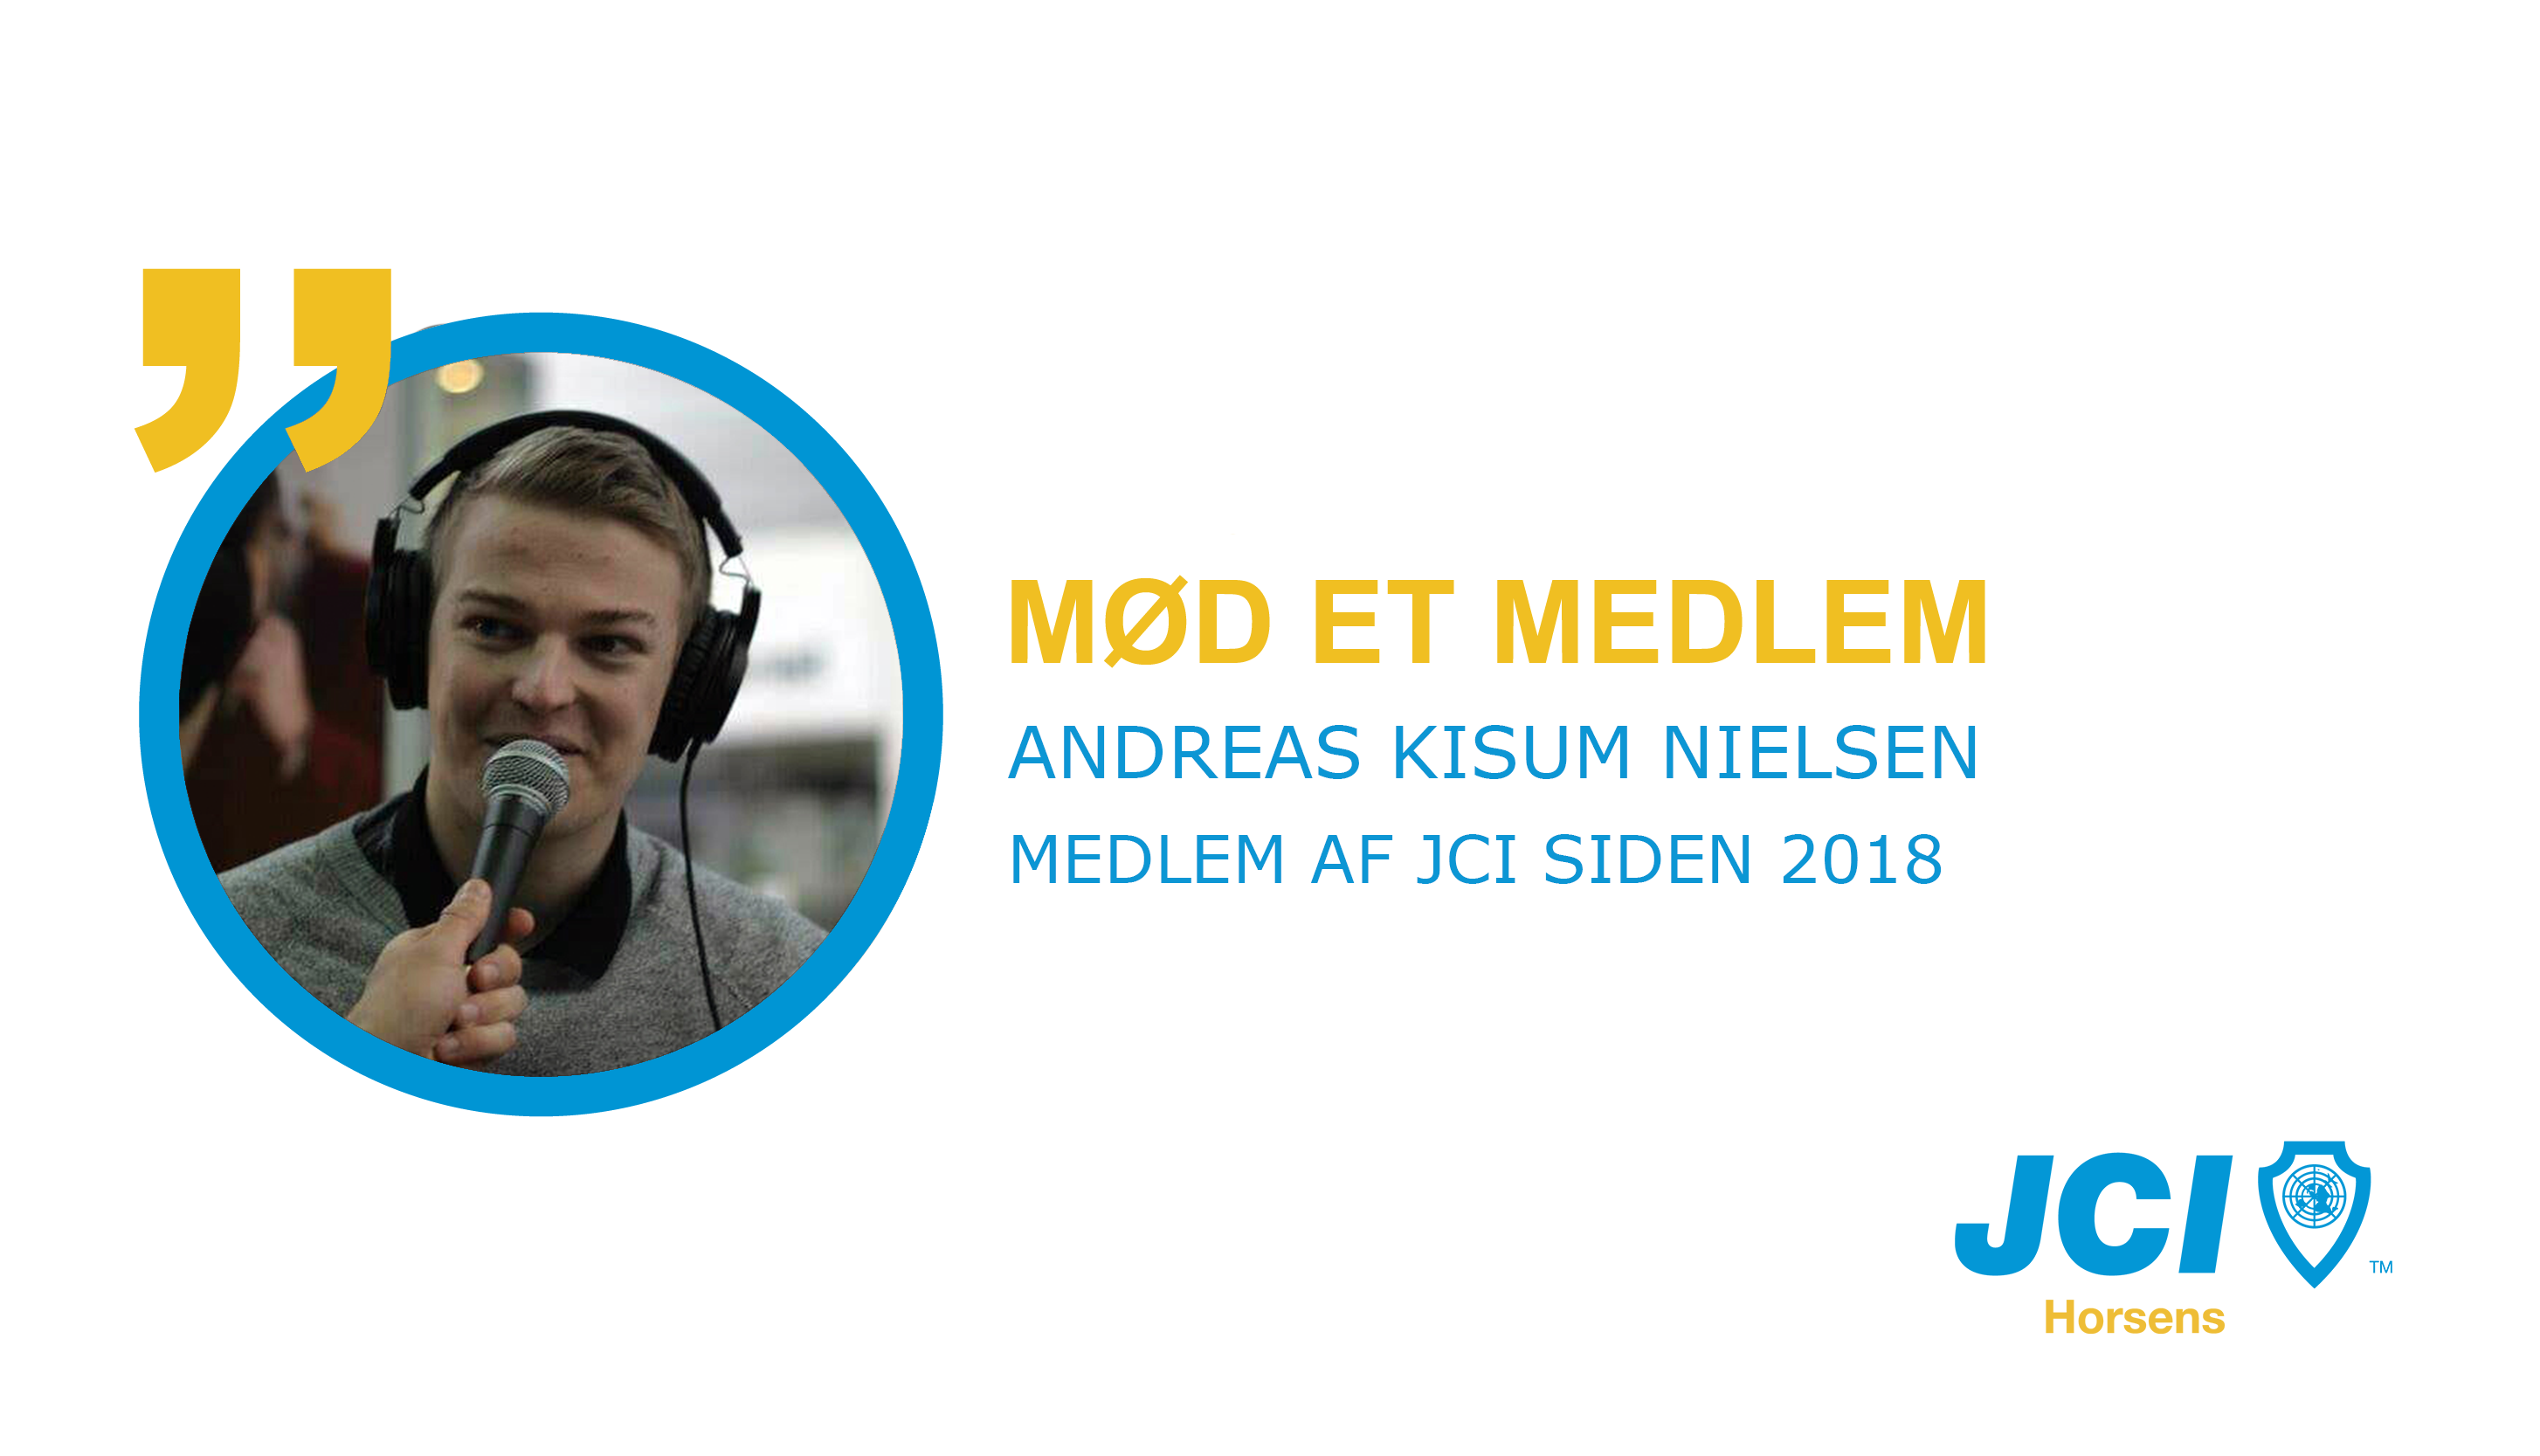 Mød et medlem af JCI Horsens: Andreas Kisum Nielsen